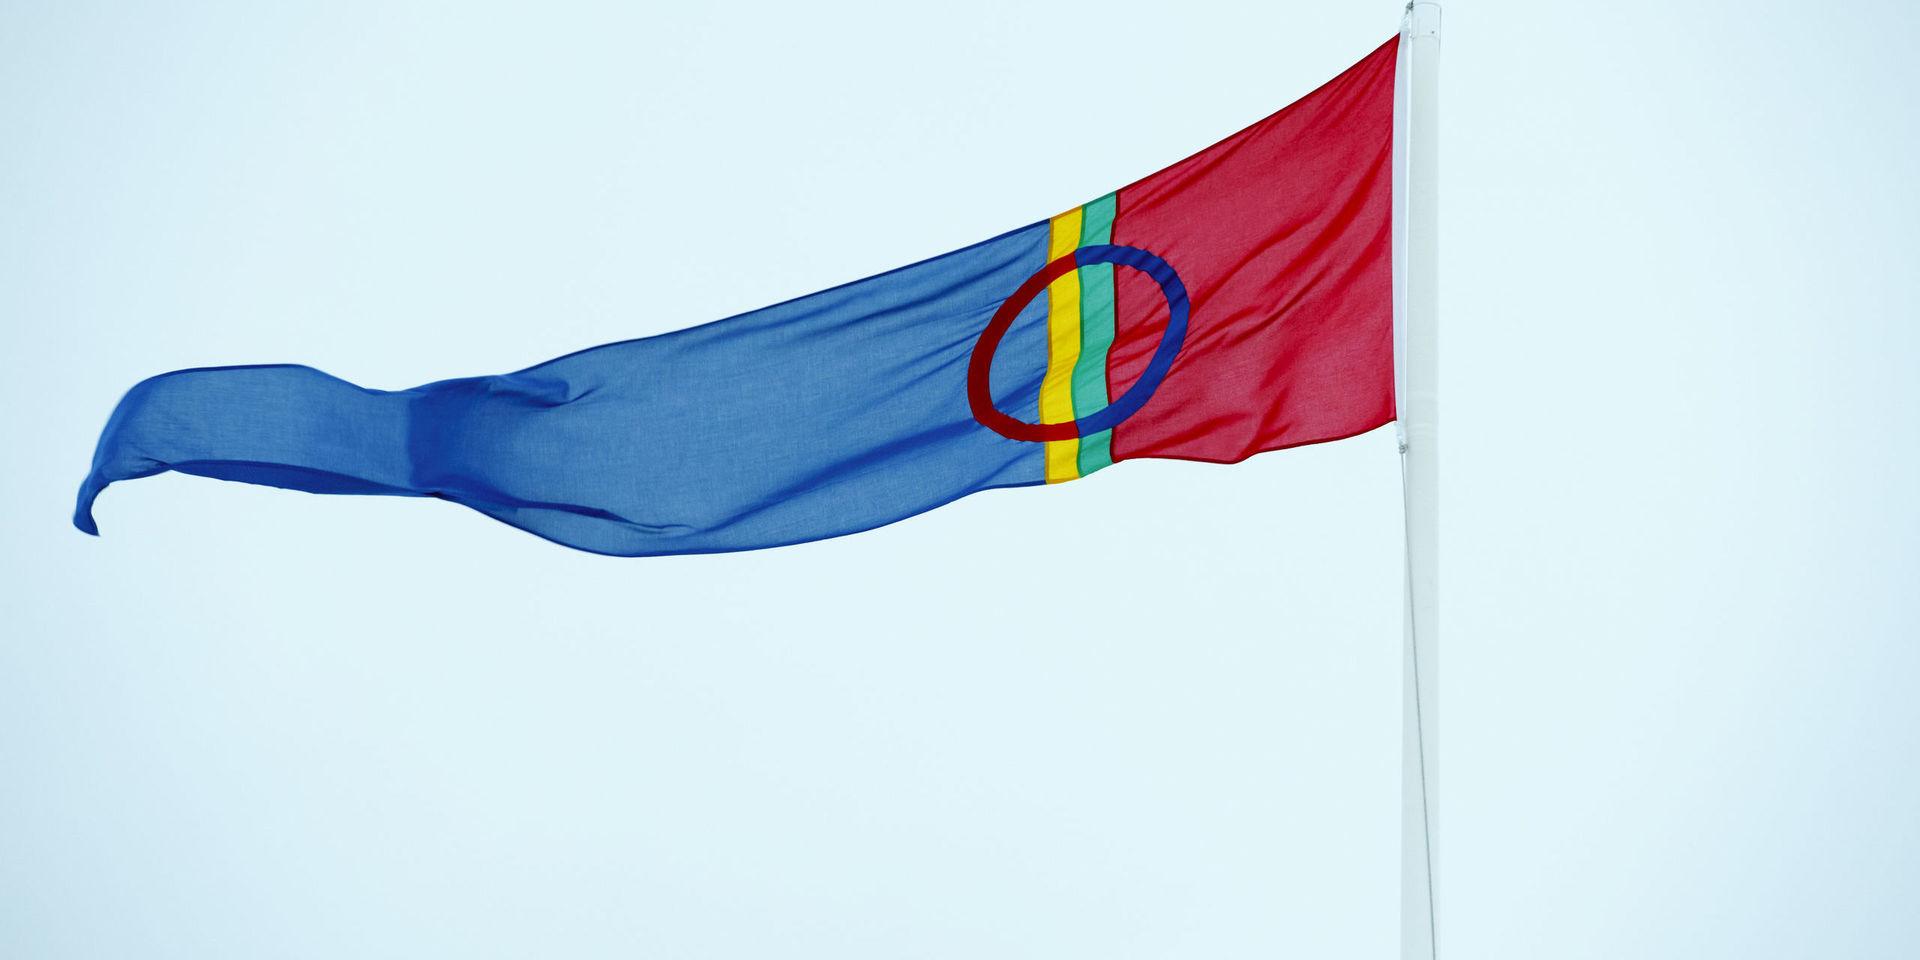 Sametinget vill att en bred parlamentarisk utredning ser över lagstiftningen i samiska rättsfrågor. Arkivbild.